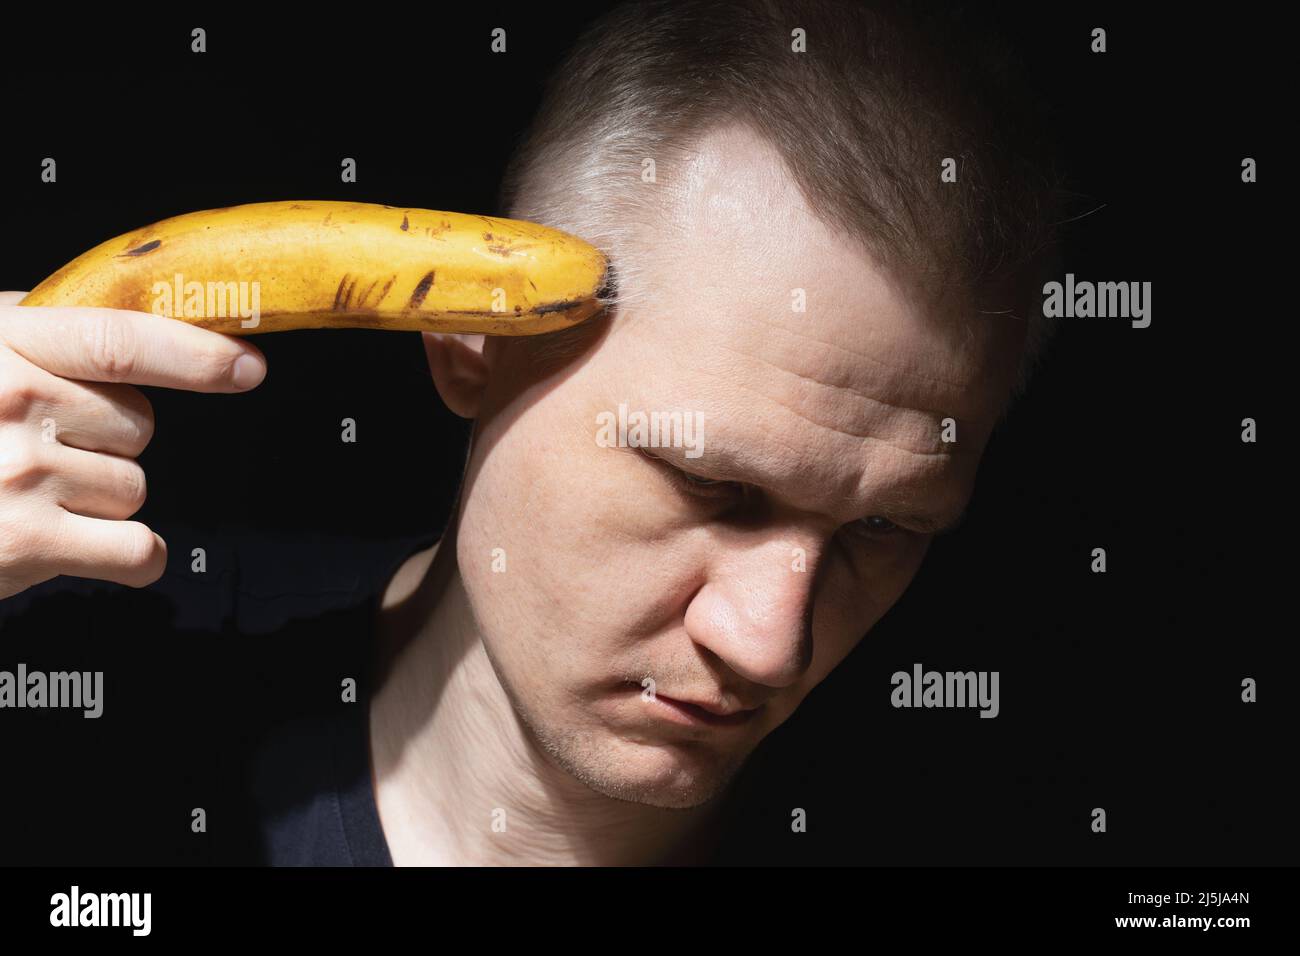 Ein erwachsener Mann mit traurigem Gesicht hält Banane wie eine Pistole auf schwarzem Hintergrund nahe an seinem Kopf. Verzweiflung, Depression und Selbstmordgedanken. Thema psychische Gesundheit. Stockfoto